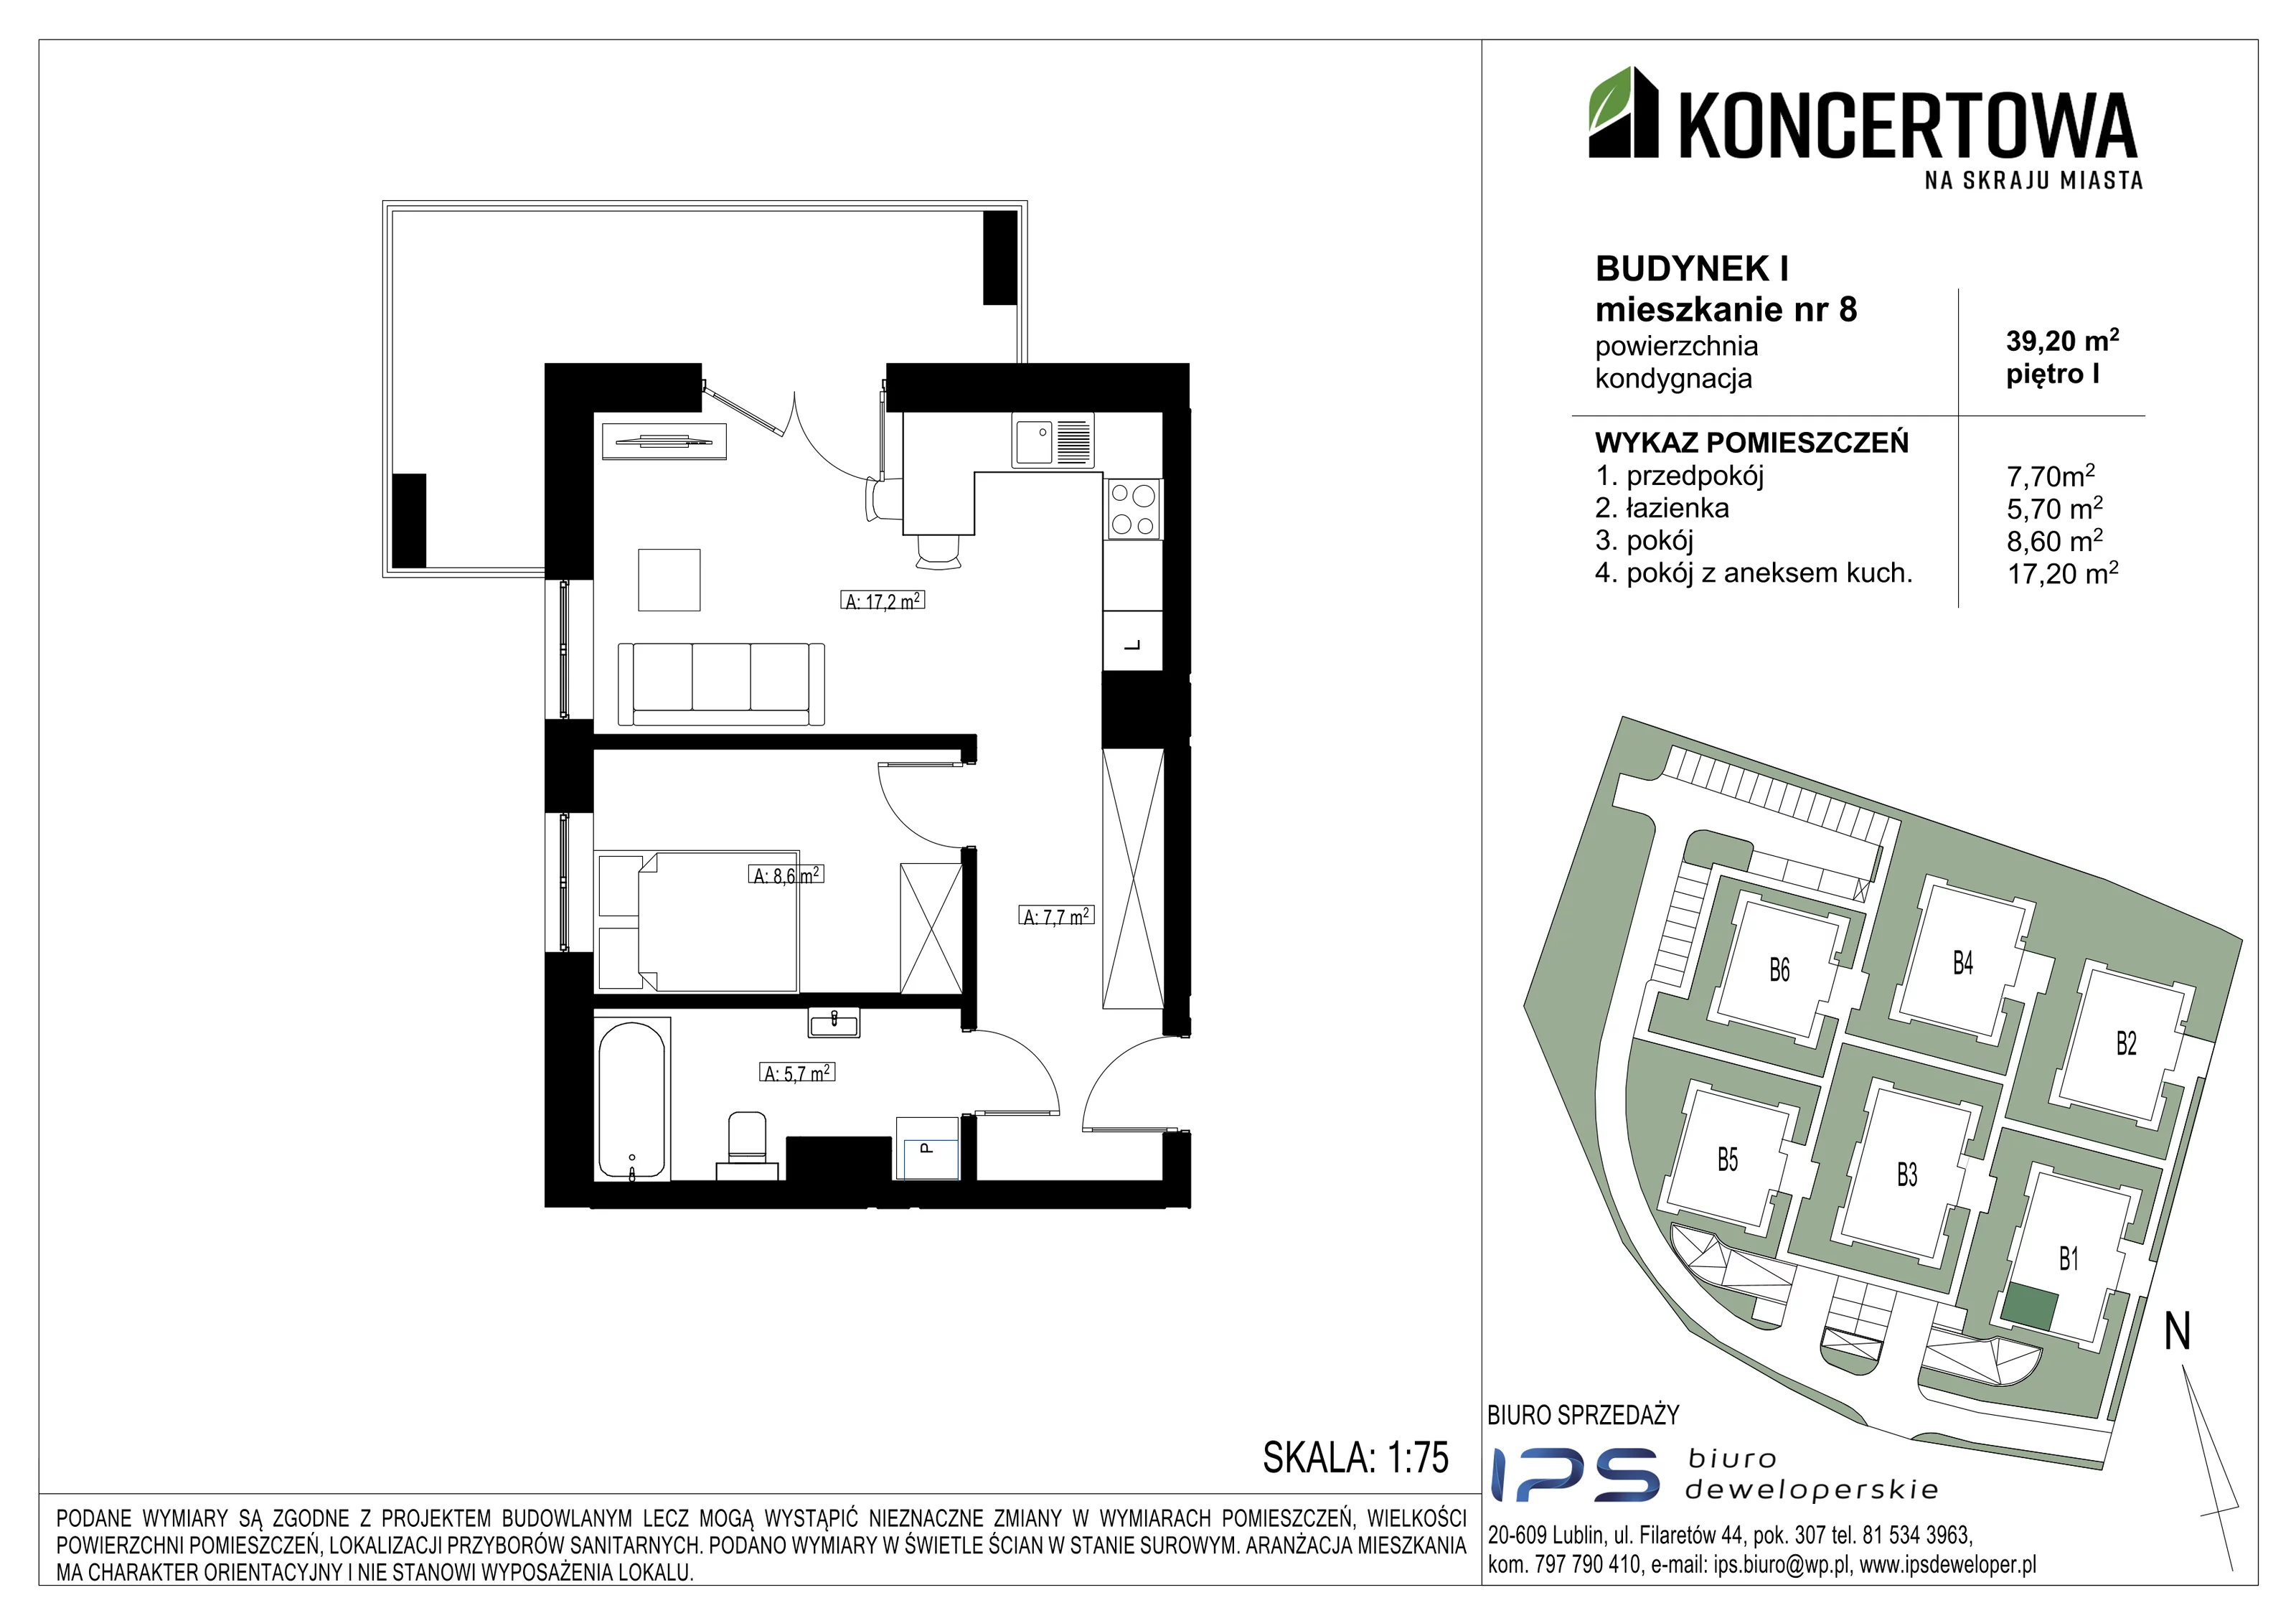 Mieszkanie 39,20 m², piętro 1, oferta nr 2_I/8, KONCERTOWA - Na skraju miasta, Lublin, Czechów Północny, Czechów Północny,  ul. Koncertowa